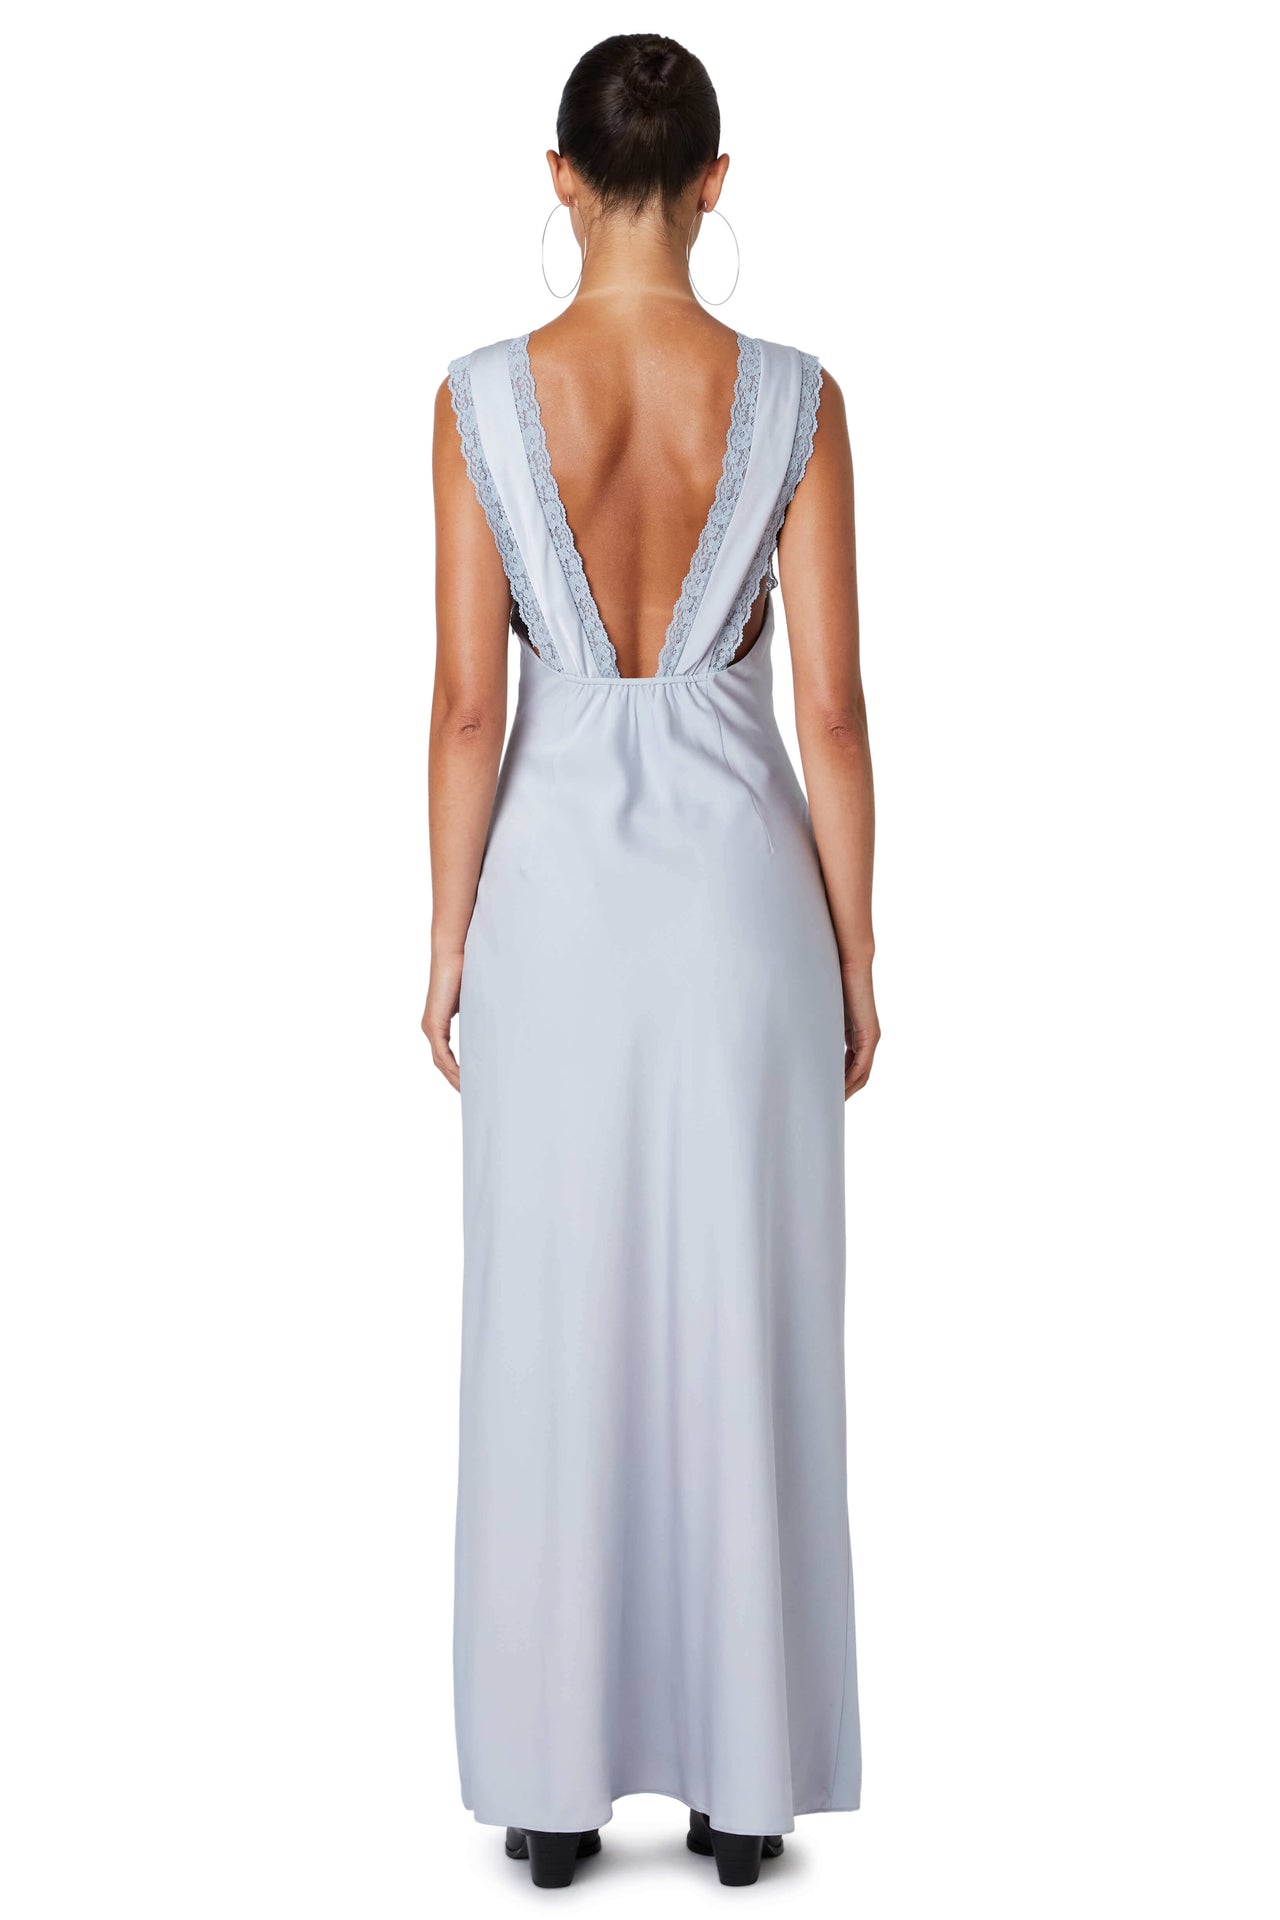 Aurelie Dress Ice Blue, Maxi Dress by NIA | LIT Boutique